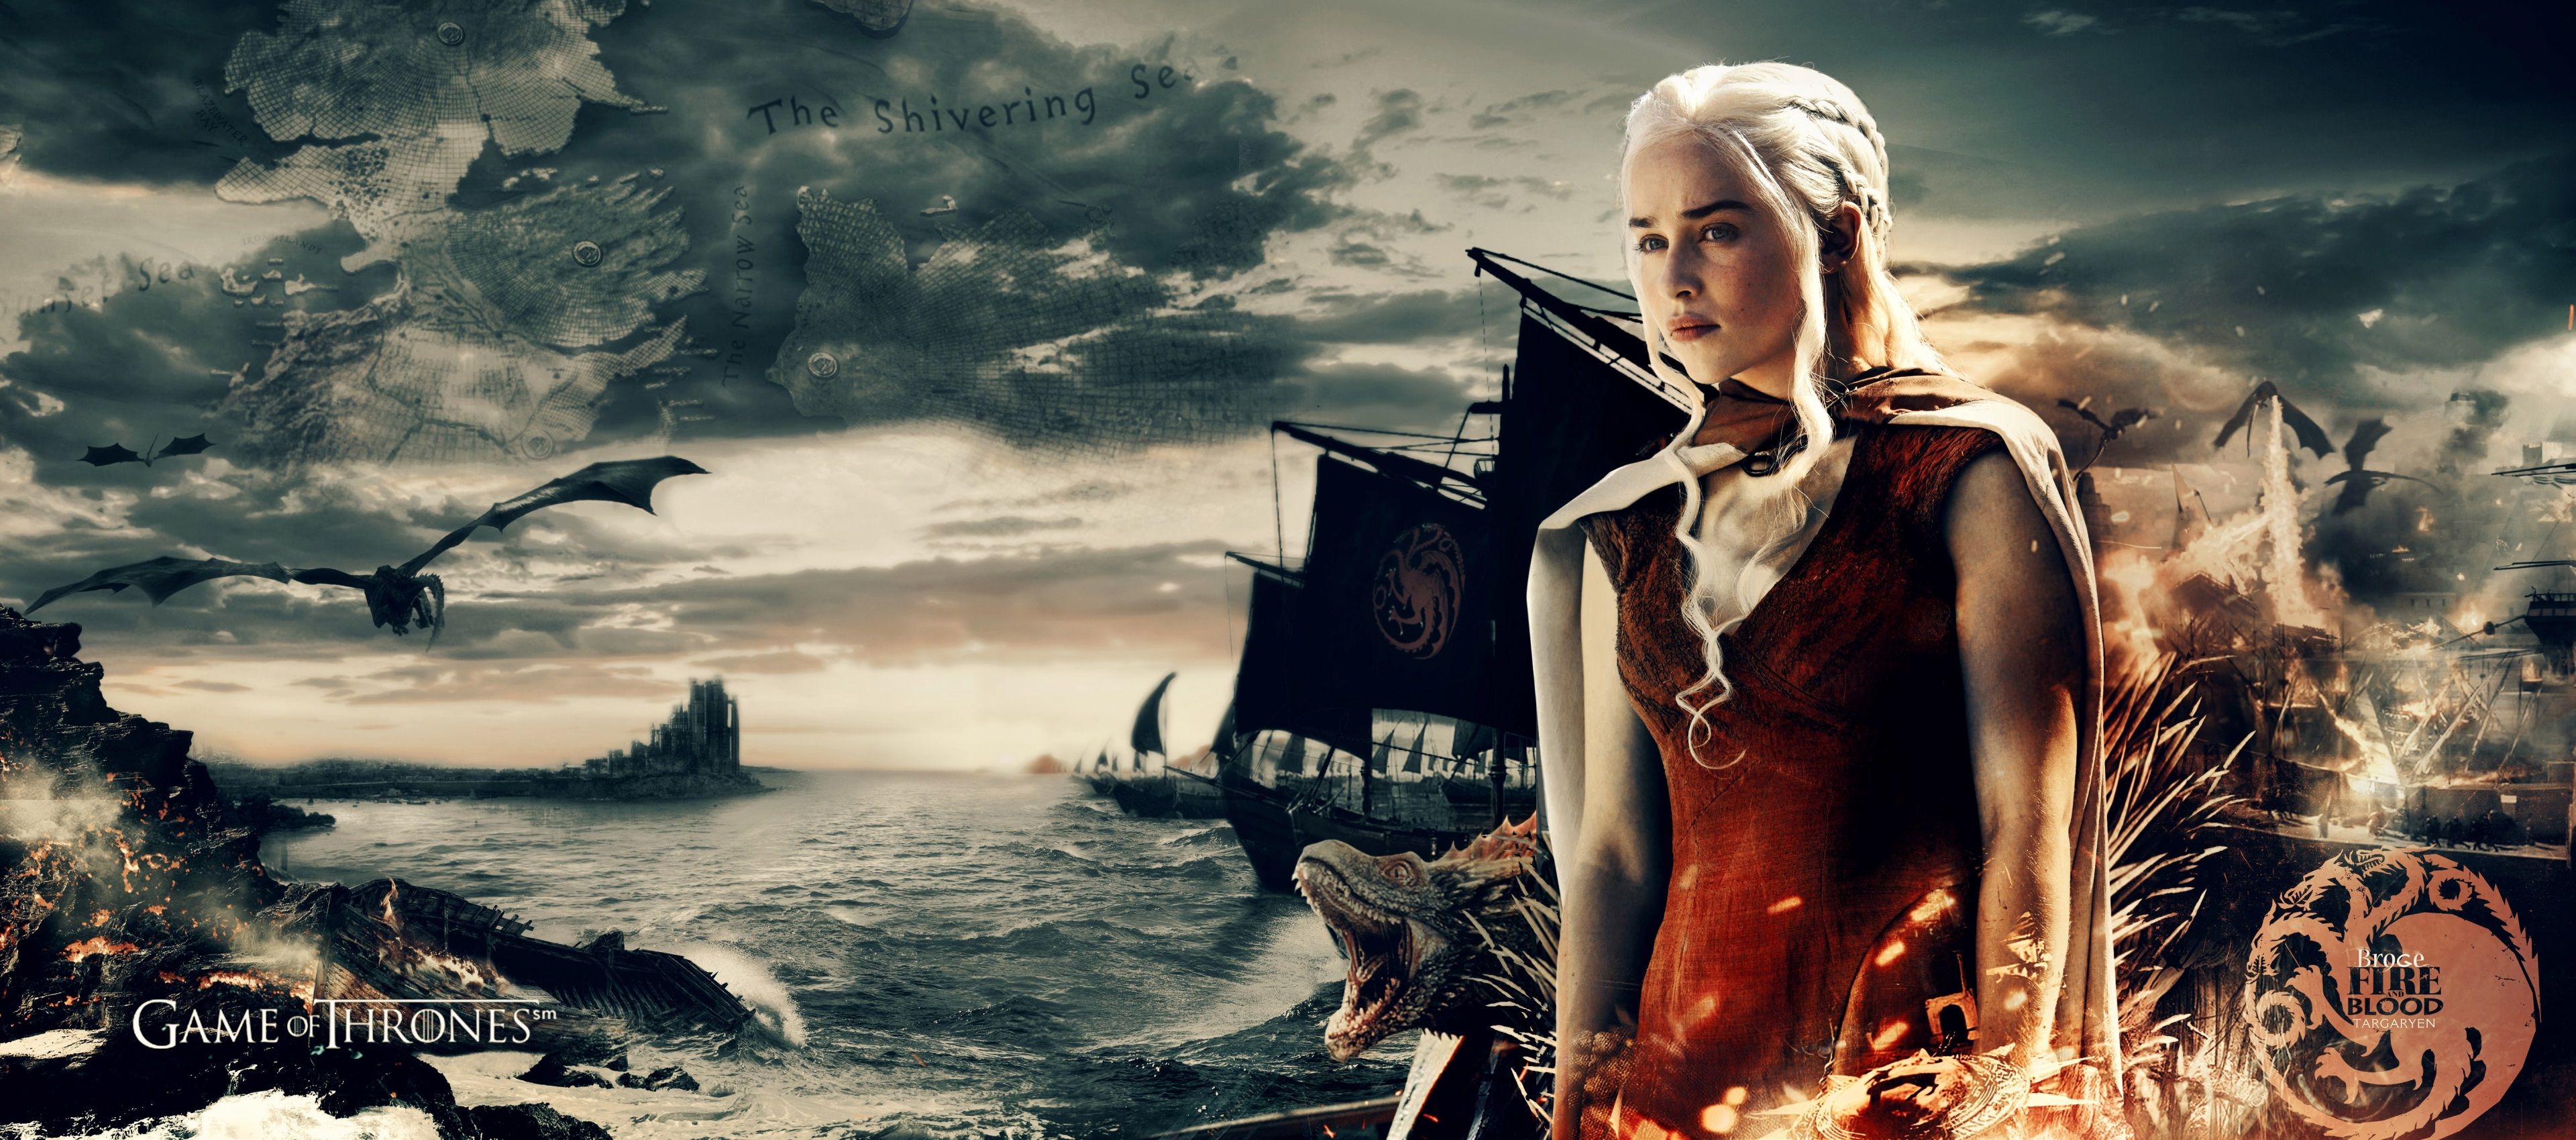 Tải xuống miễn phí hình nền màn hình daenerys targaryen 4k hd 3840x1699: Daenerys Targaryen là một nhân vật nữ mạnh mẽ và quyến rũ trong bộ phim truyền hình Game of Thrones. Với hoạt hình động đầy đặn cùng với đầy đủ kích thước, bạn có thể tải xuống hình nền daenerys targaryen 4k hd 3840x1699 miễn phí ngay bây giờ.